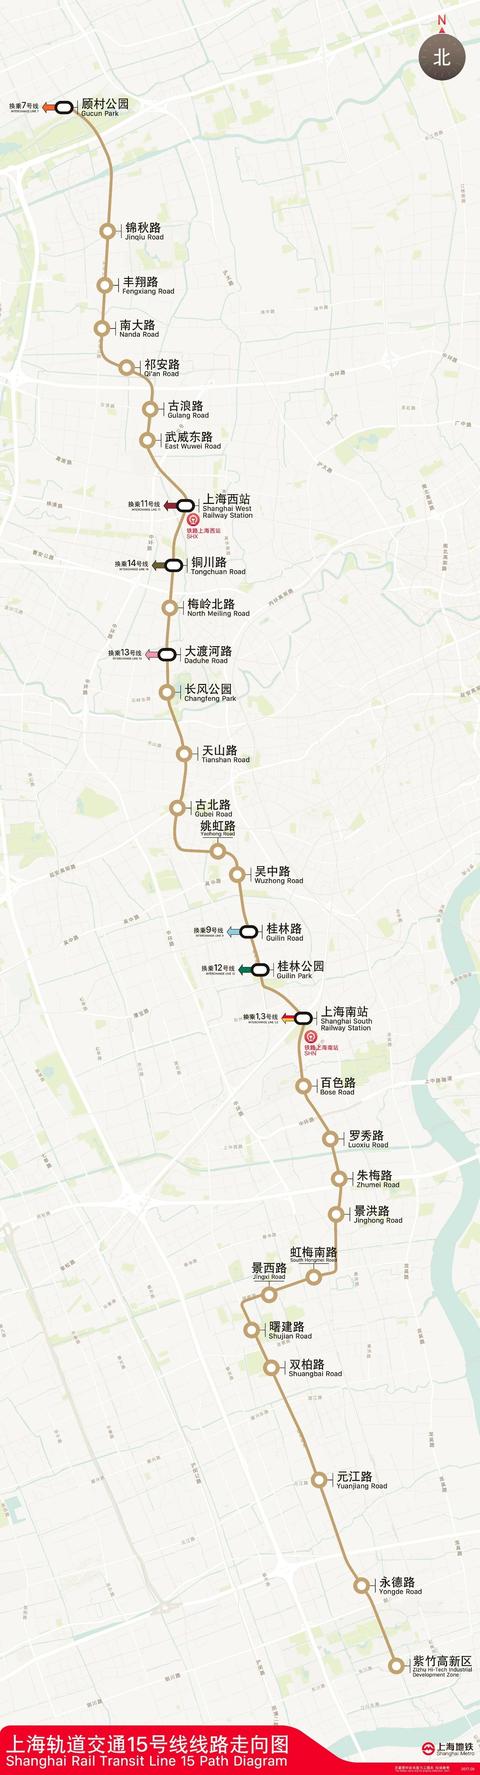 上海轨道交通15号线通车在即,南延伸到奉贤区的优先级